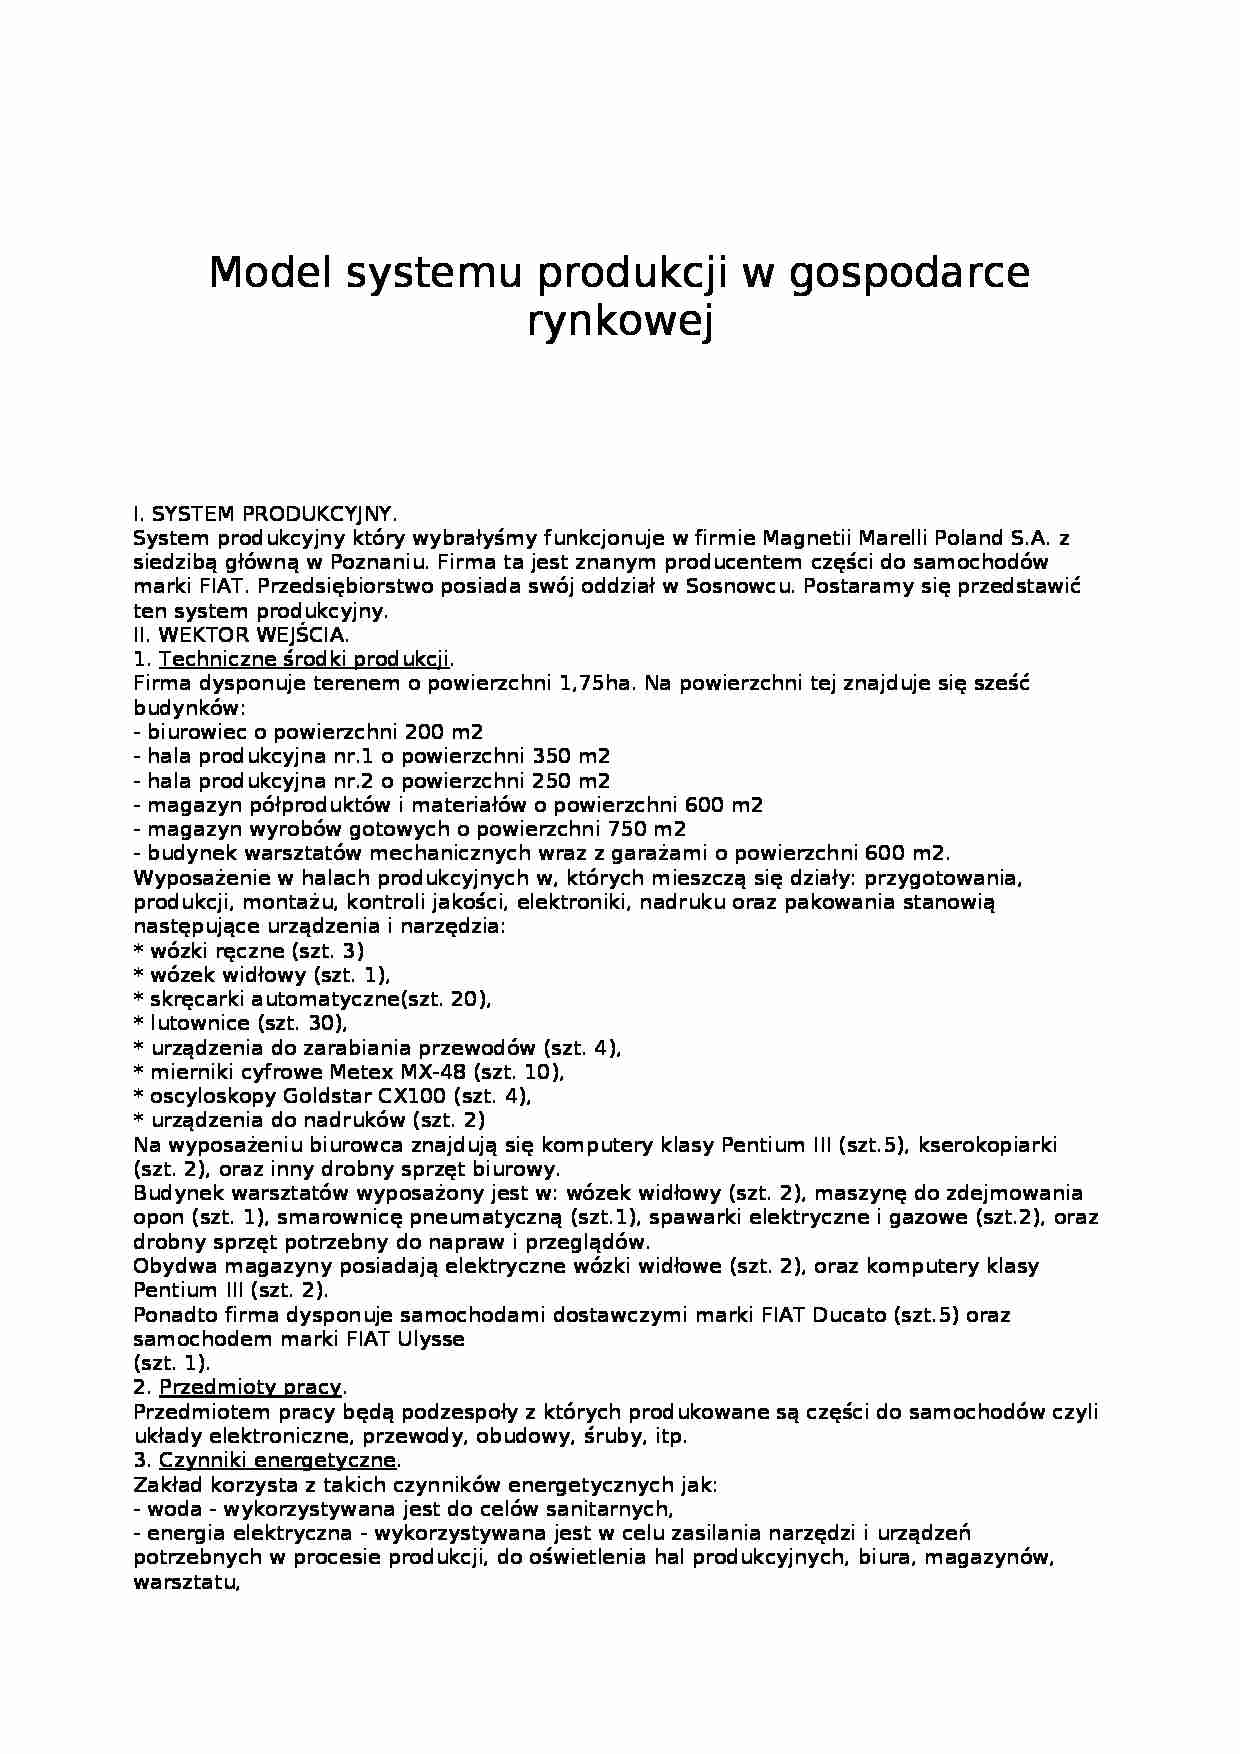 Model systemu produkcji w gospodarce rynkowej - strona 1